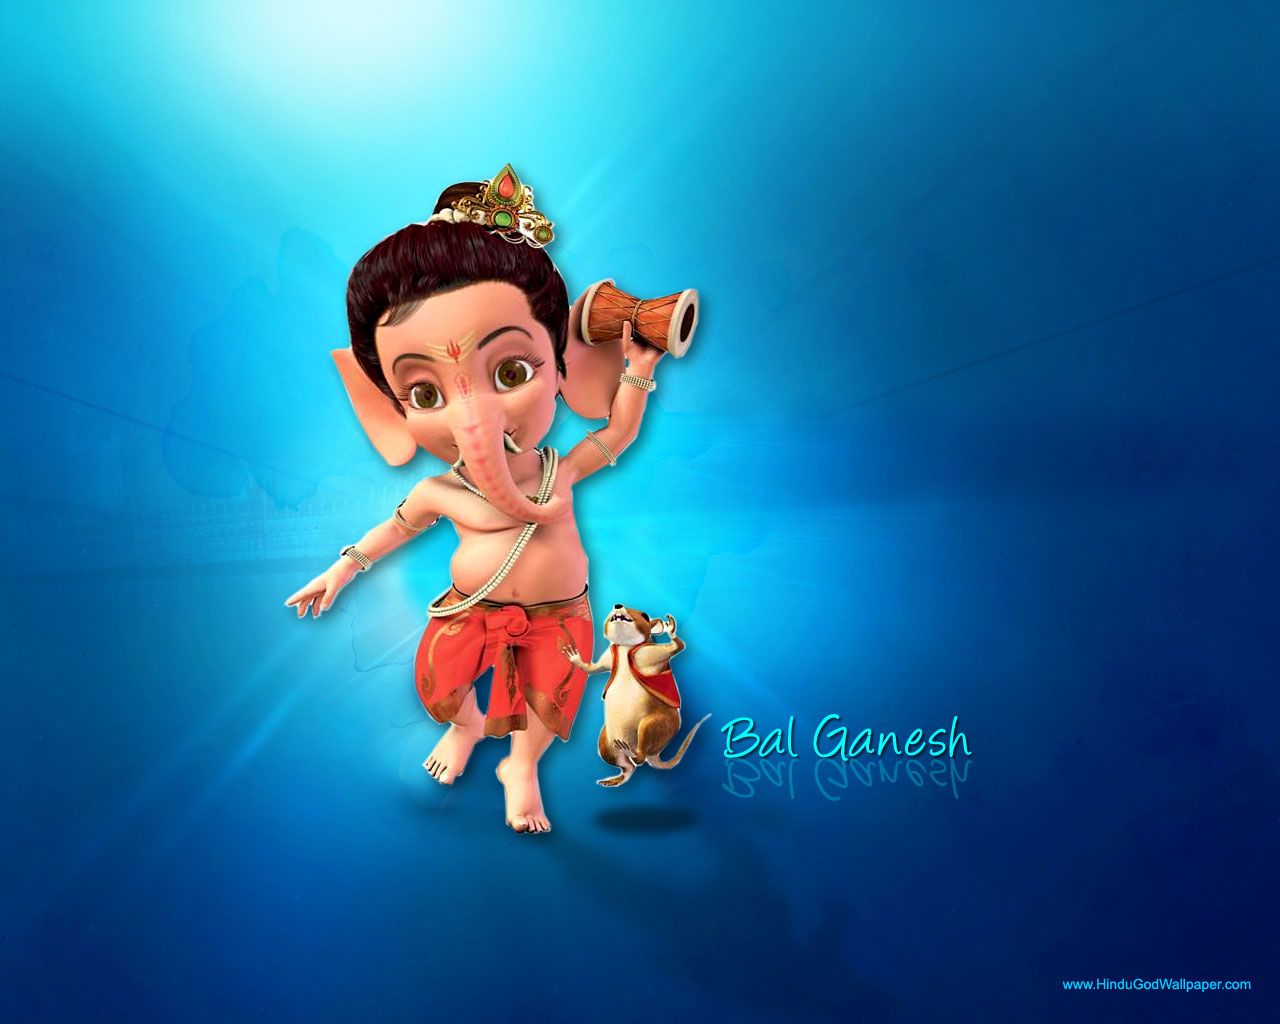 Vinayagar Animation Images Hd - 1280x1024 Wallpaper 